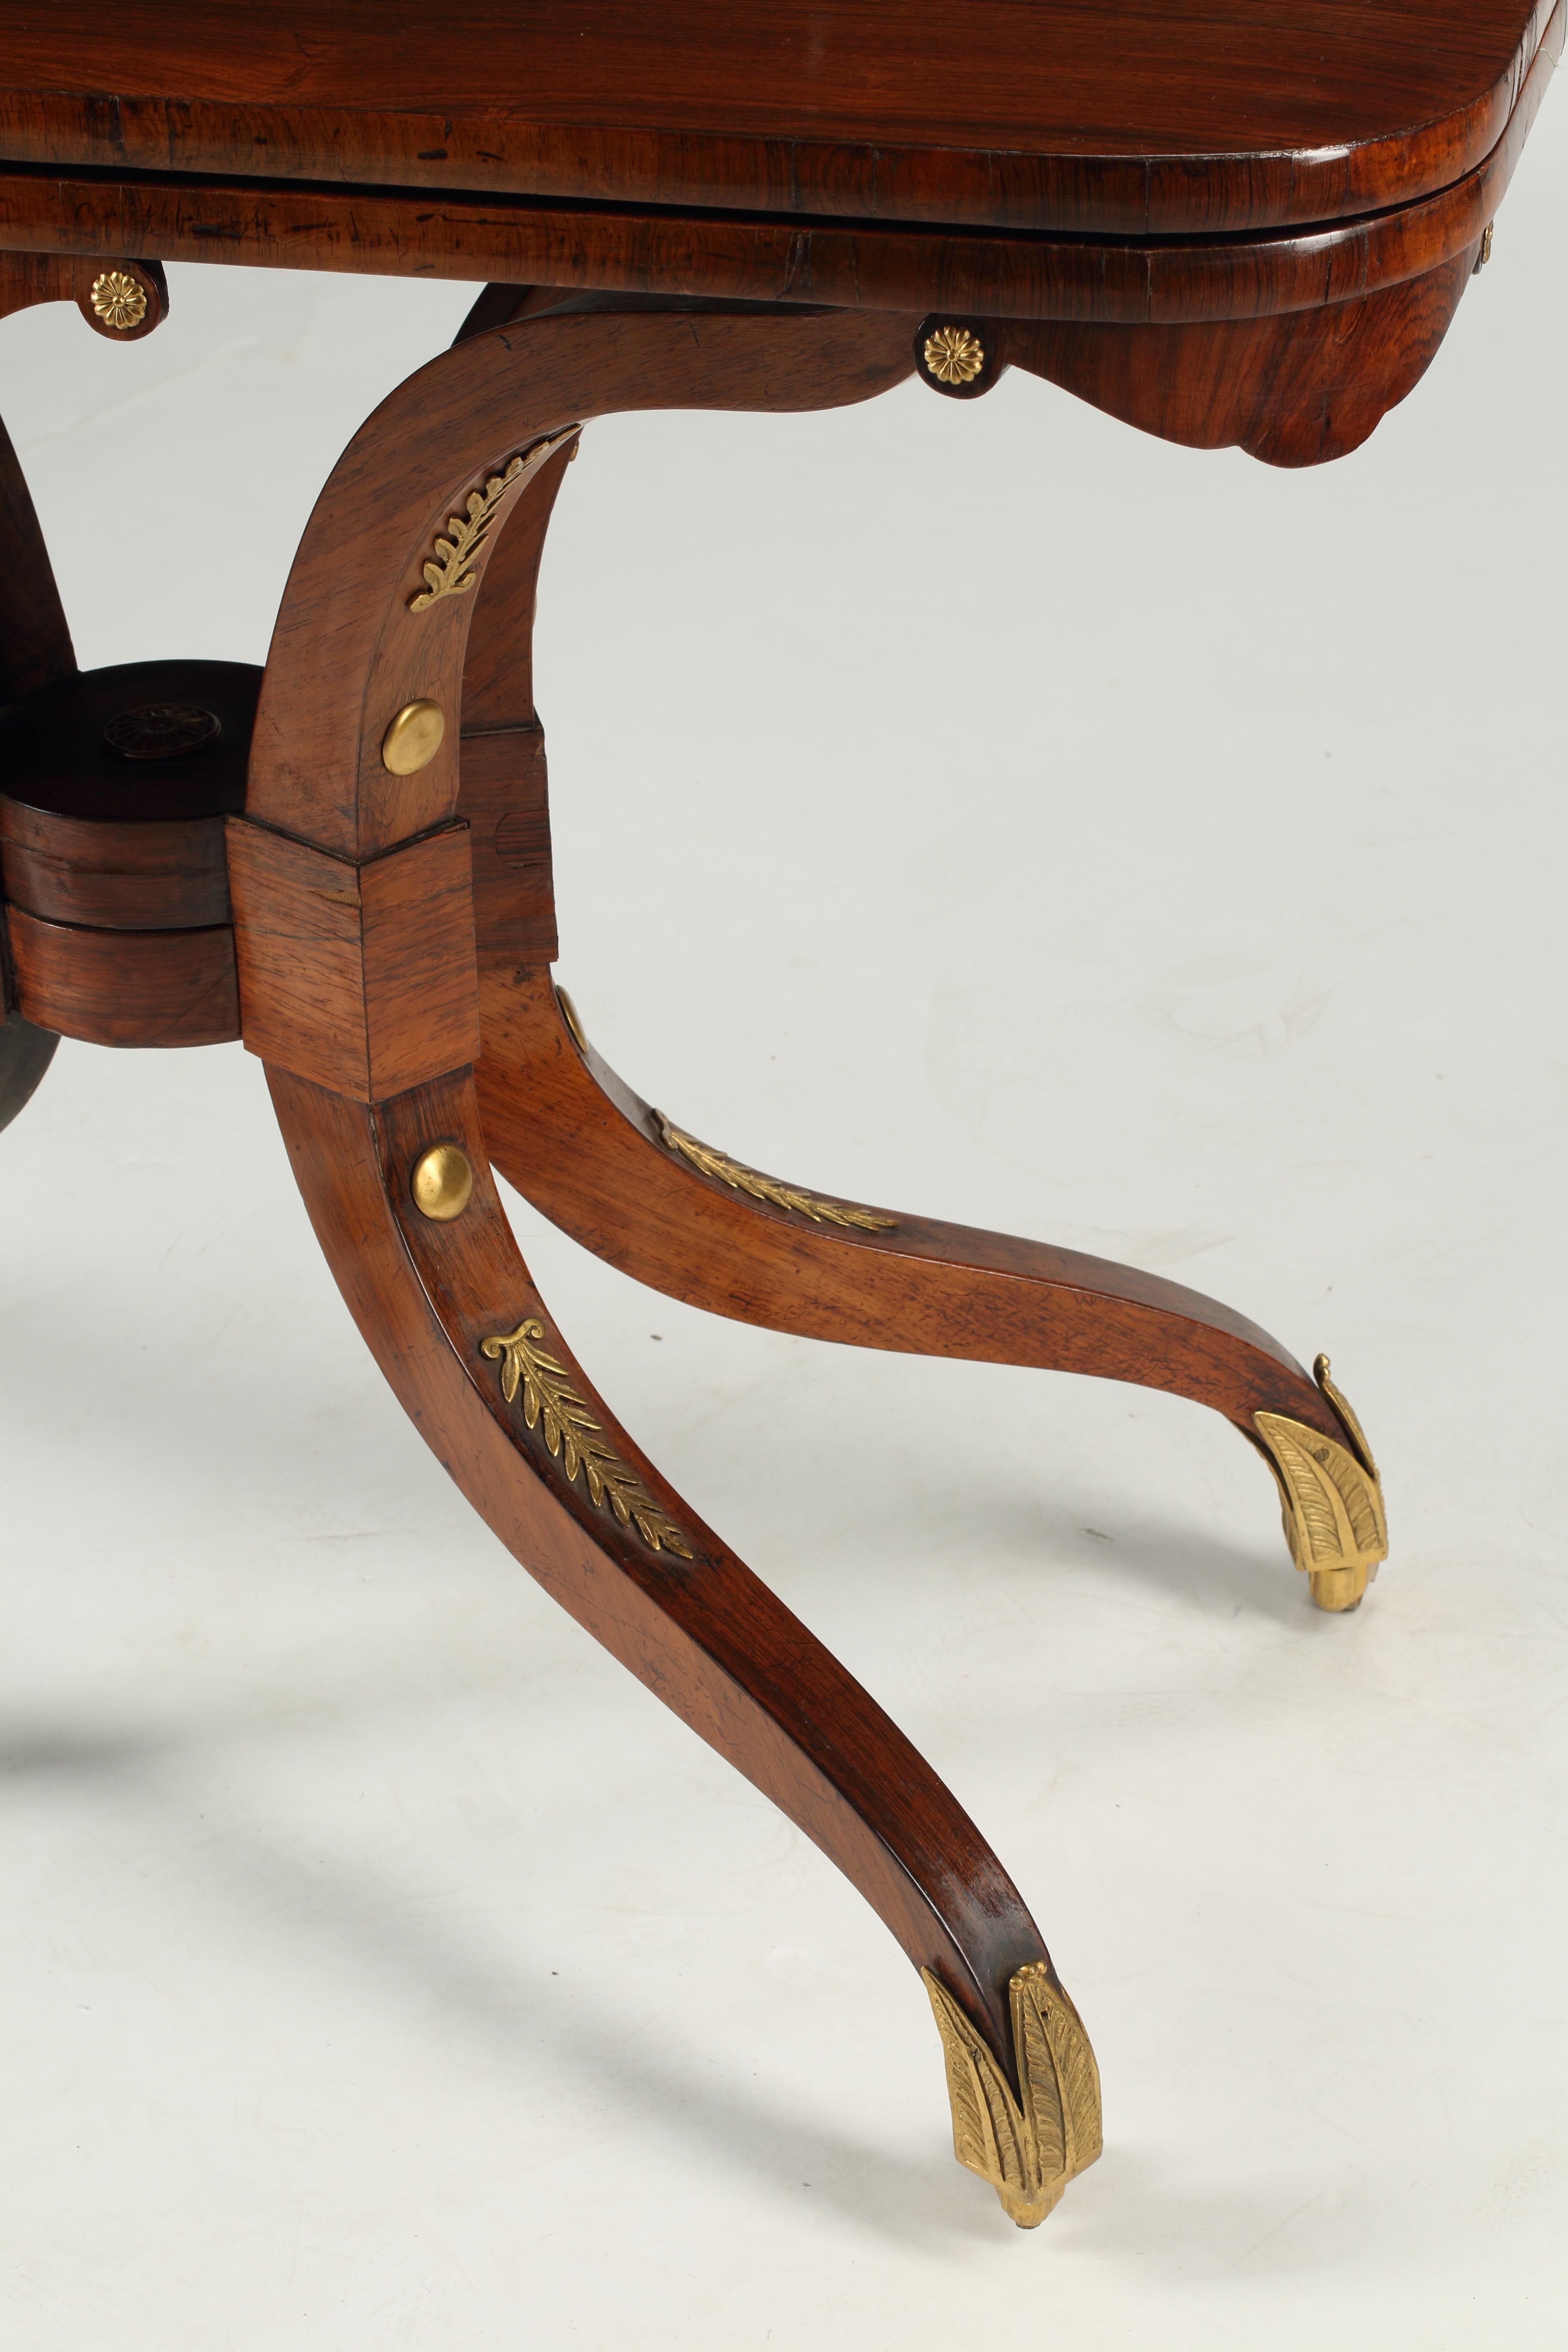 Ein eleganter englischer Palisander Regency Flip Top Games Table mit Dore Bronze Rosette montiert auf Schürze. Bronzebeschläge mit Lorbeermotiv auf Beinen, die mit Messingschuhen ausgestattet sind. Anfang des 19. Jahrhunderts.
Dieser vielseitige